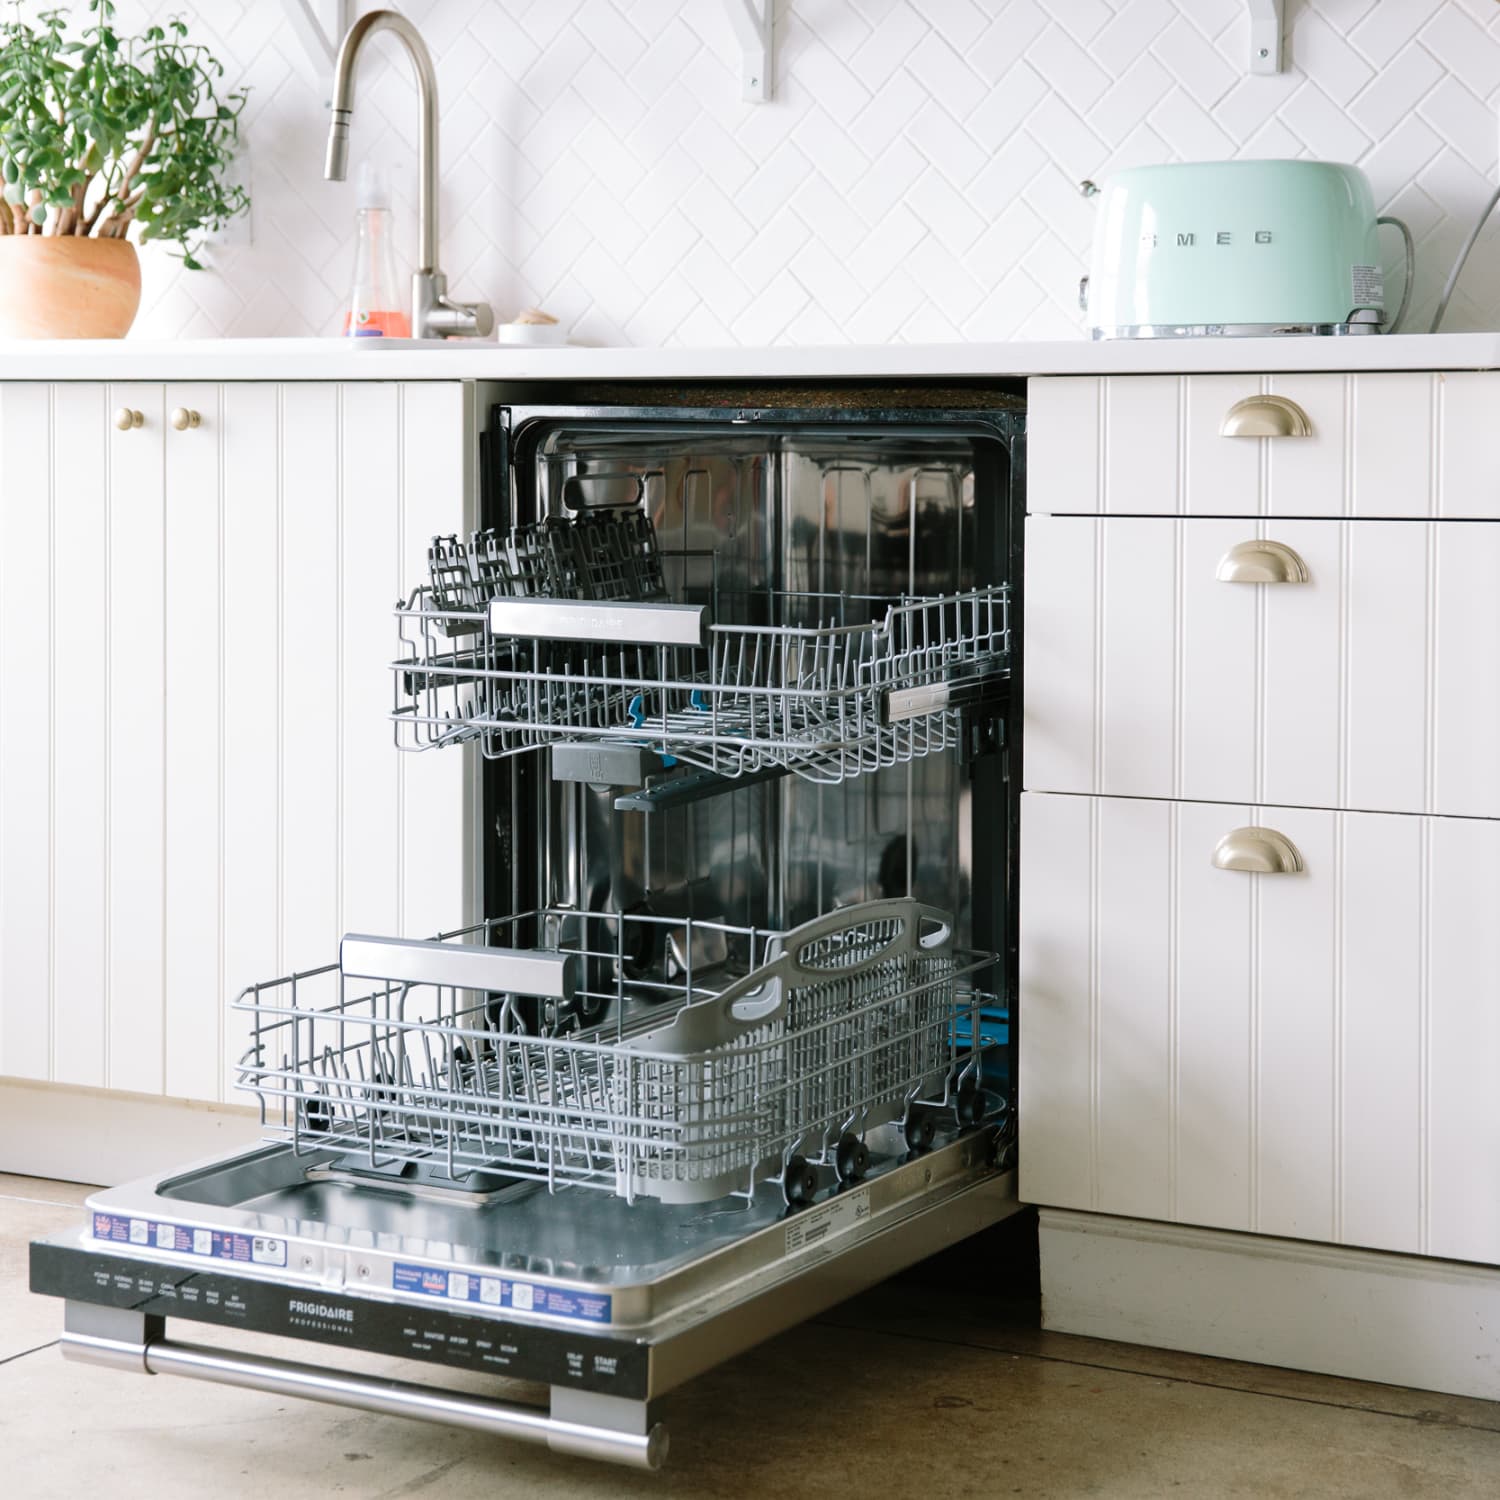 Compact Dishwashers is types of dishwashers